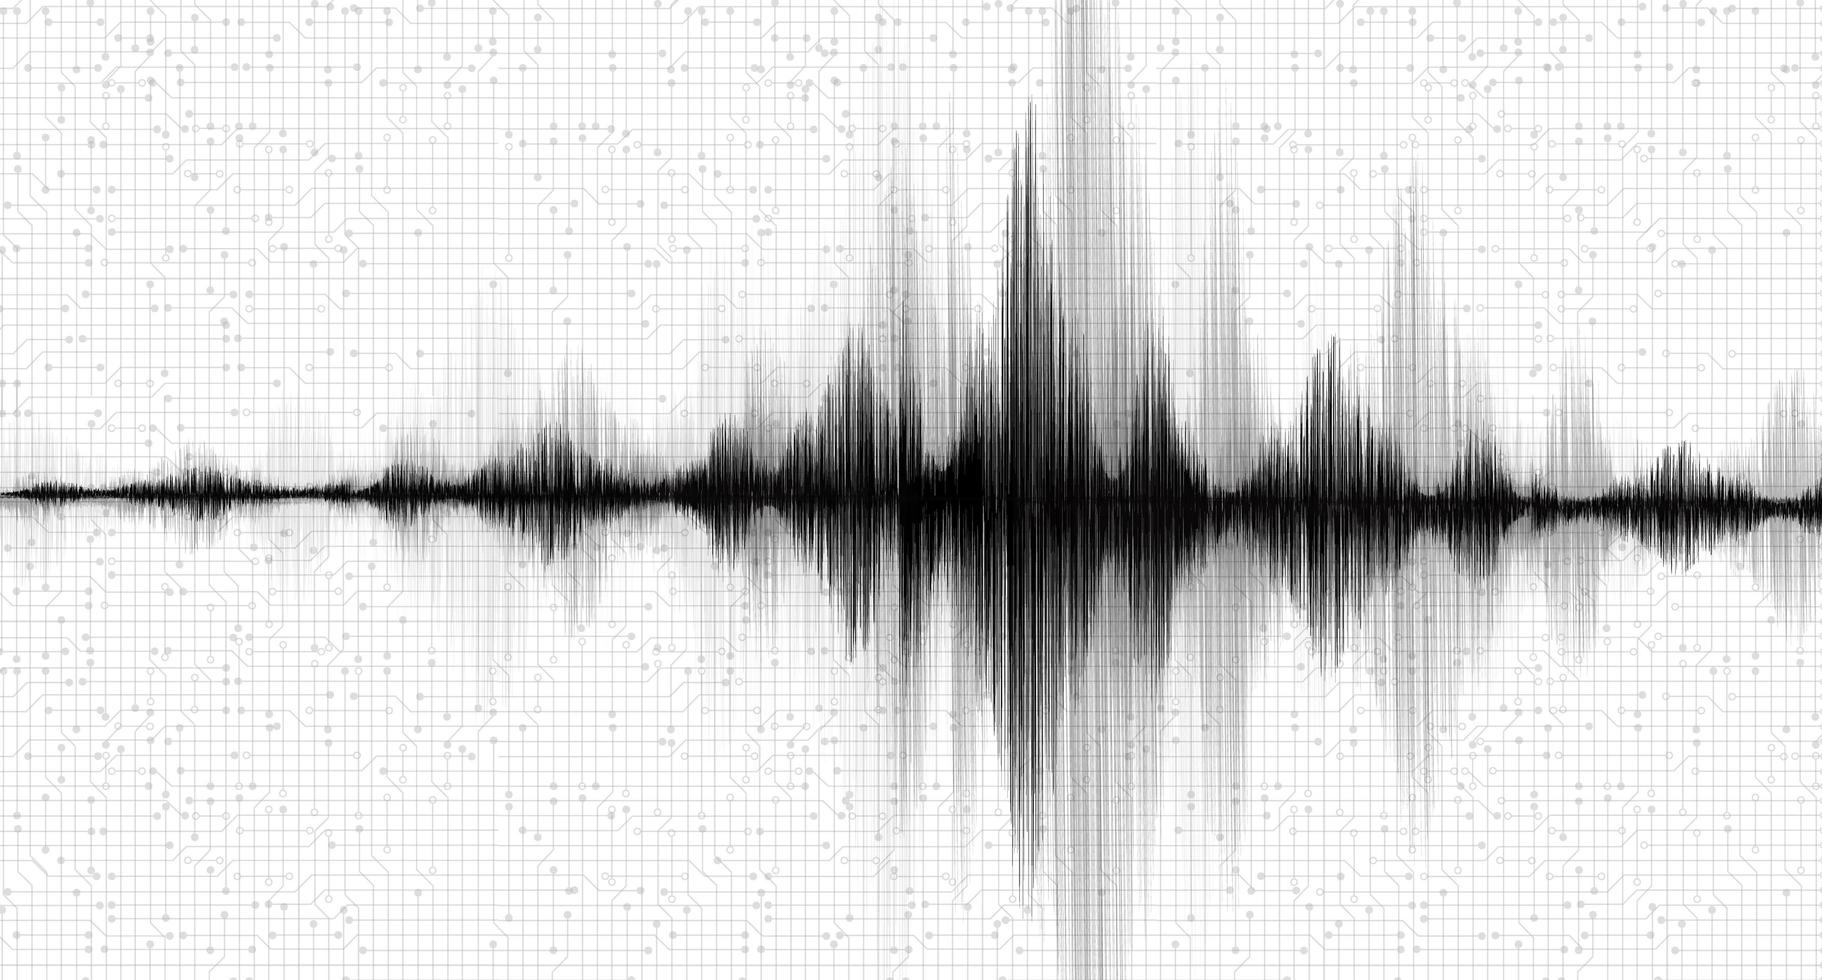 mini onda di terremoto in bianco e nero con sfondo di carta bianca di linea di vibrazione circolare, concetto di diagramma di onda audio, design per l'istruzione e la scienza, illustrazione vettoriale